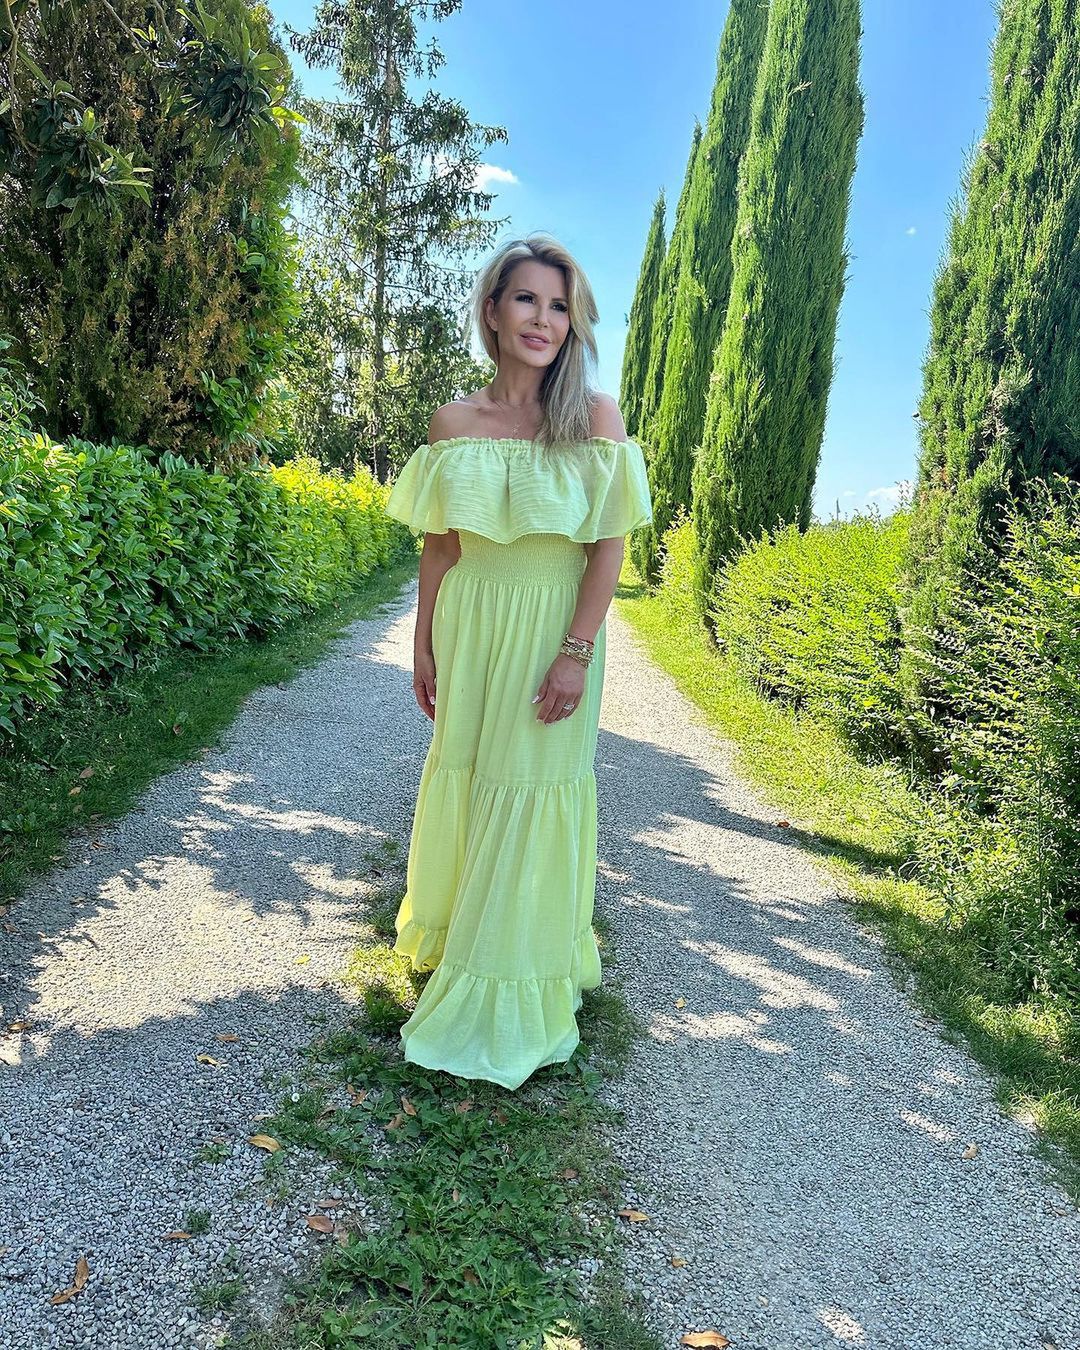 Joanna Racewicz w sukience maxi, fot. Instagram.com/joannaracewicz